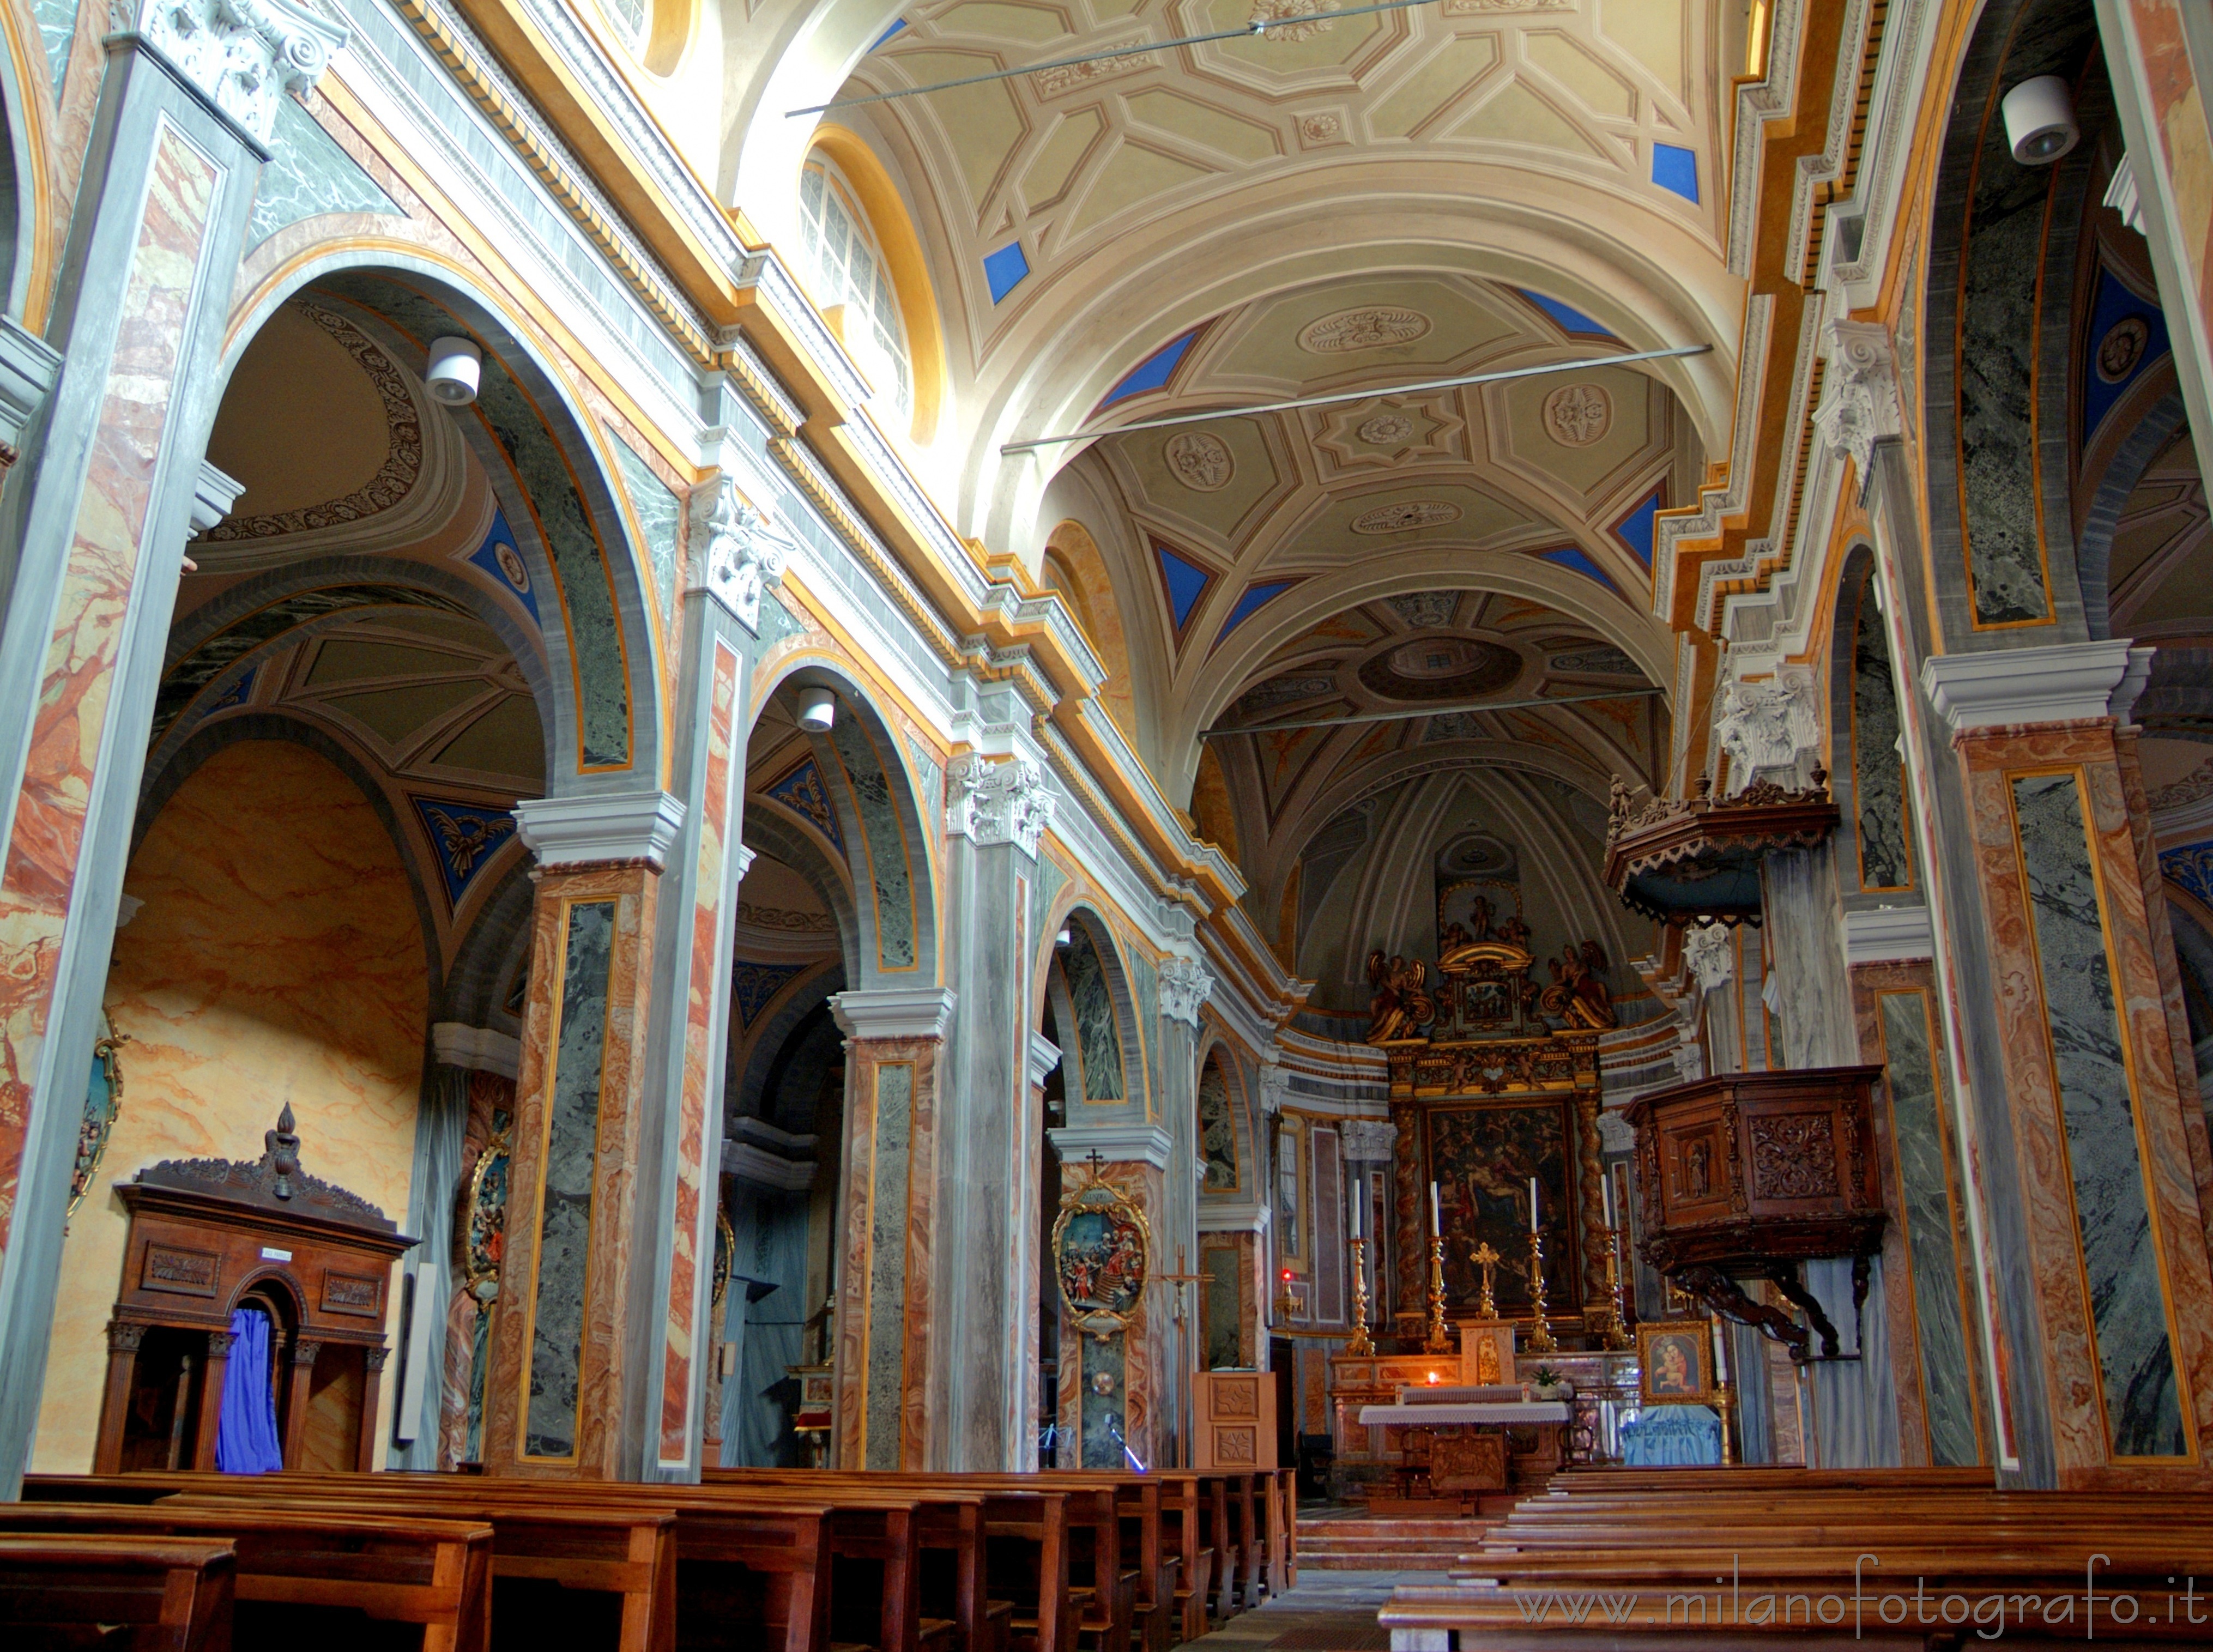 Sagliano Micca (Biella, Italy): Interiors of the Church of the Saints Giacomo and  Stefano - Sagliano Micca (Biella, Italy)